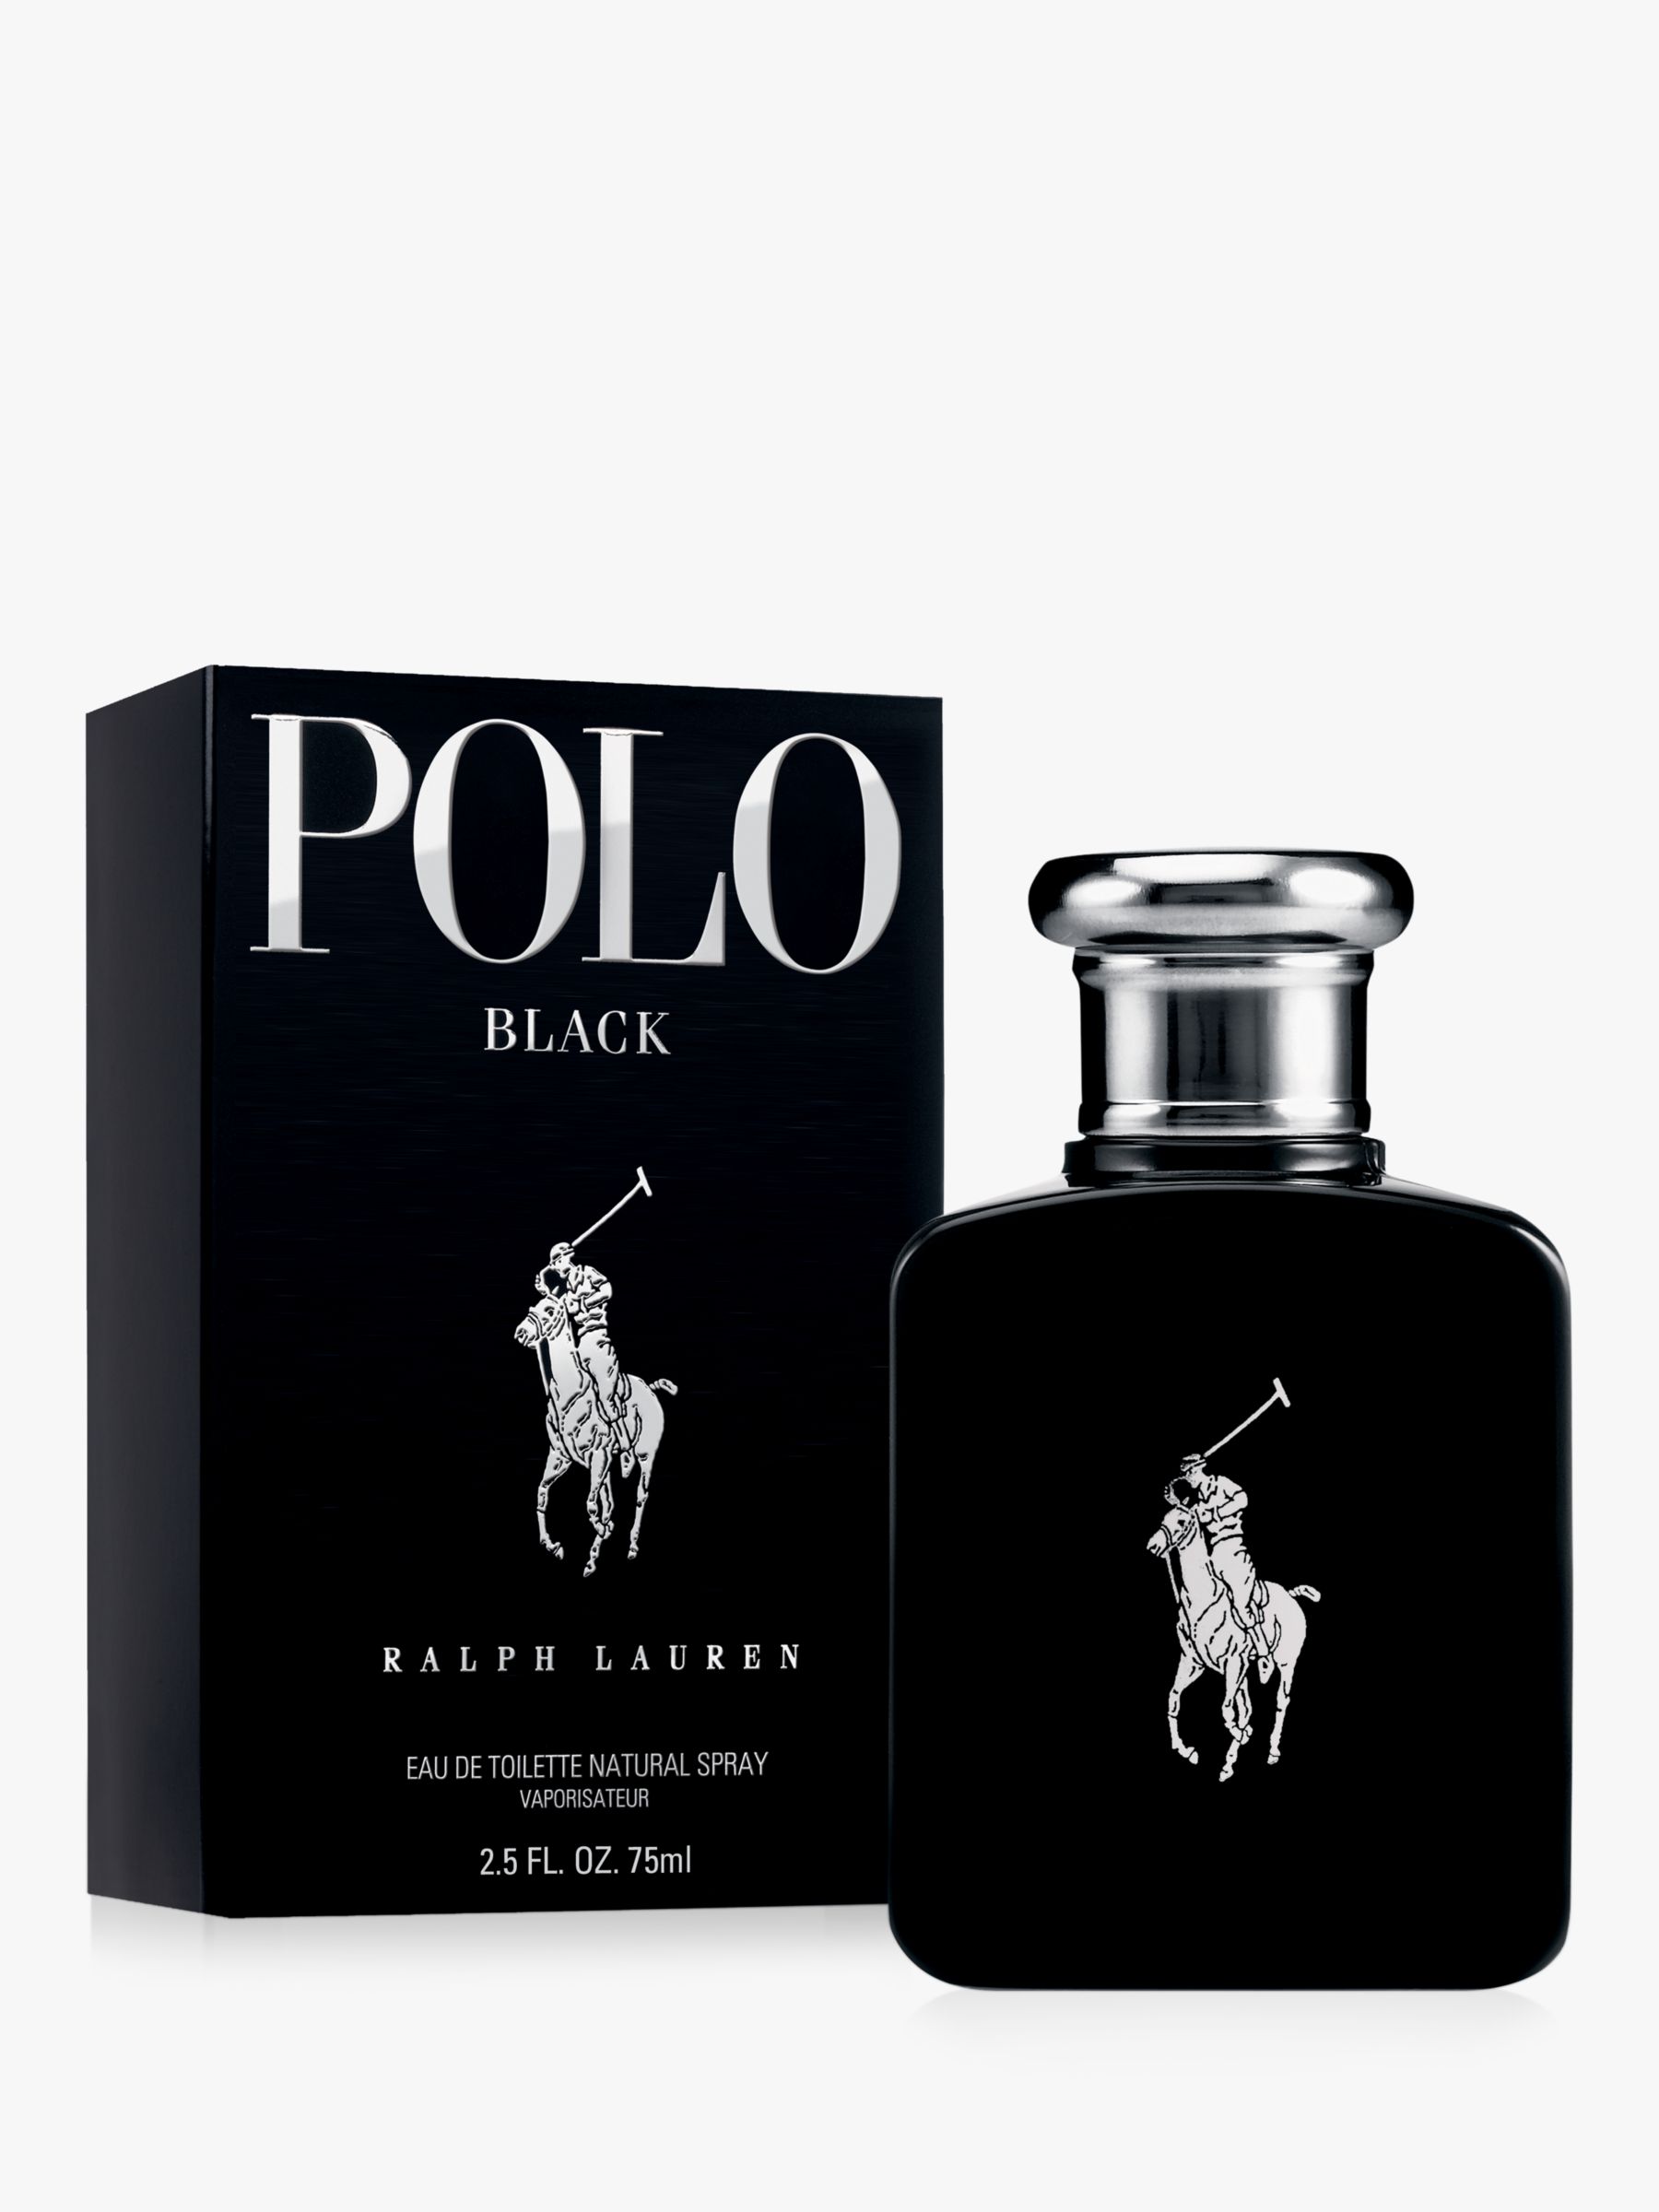 Polo Ralph Lauren Black, Eau de Toilette Spray, 75ml